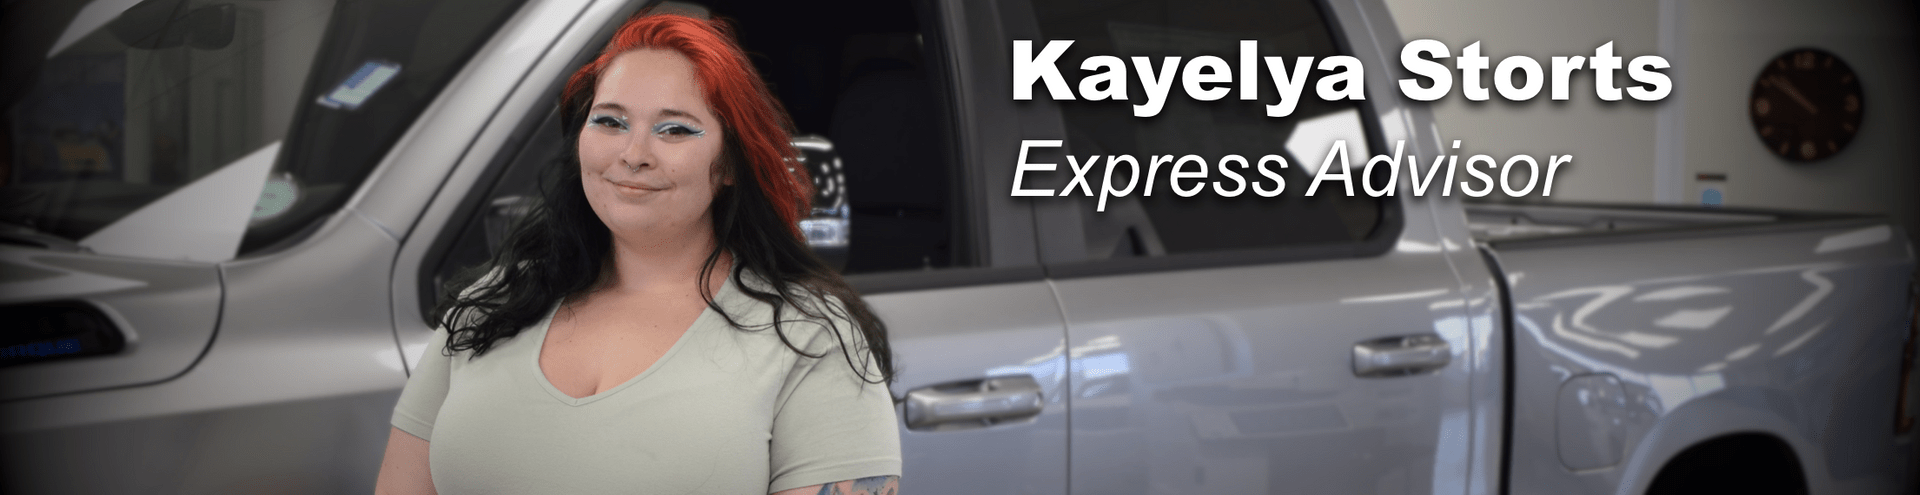 kayelya storts express advisor prestige chrysler dodge jeep ram